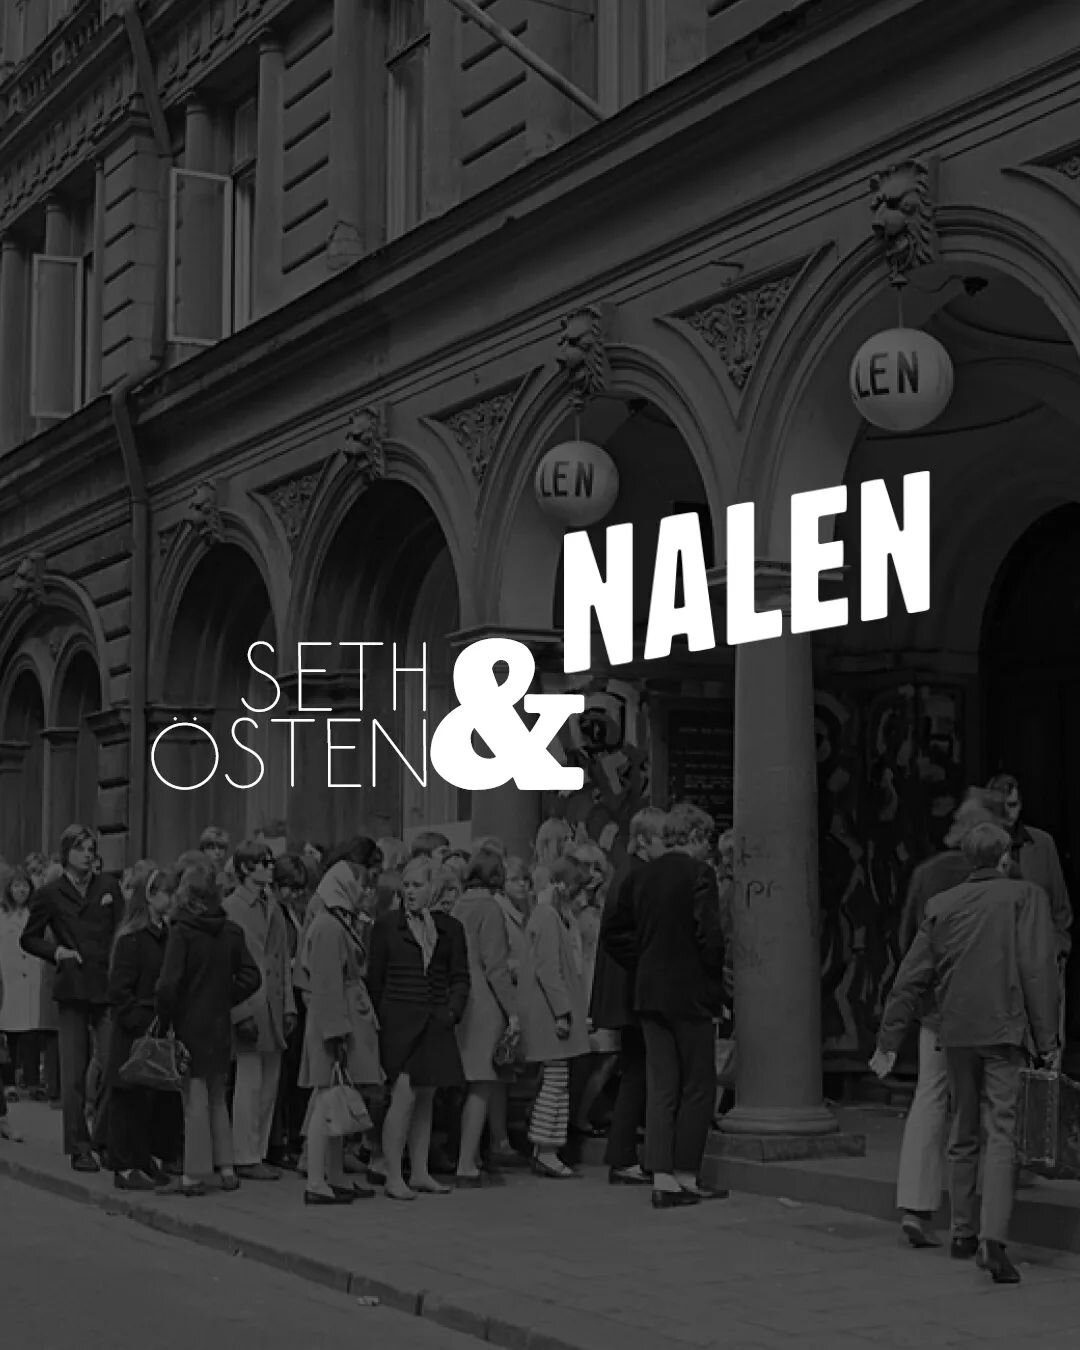 Nytt uppdrag &hearts;️
I v&aring;r arbetar vi med @nalenstockholm restaurang.
En plats med hj&auml;rta och sj&auml;l, fr&aring;n historik till personal.